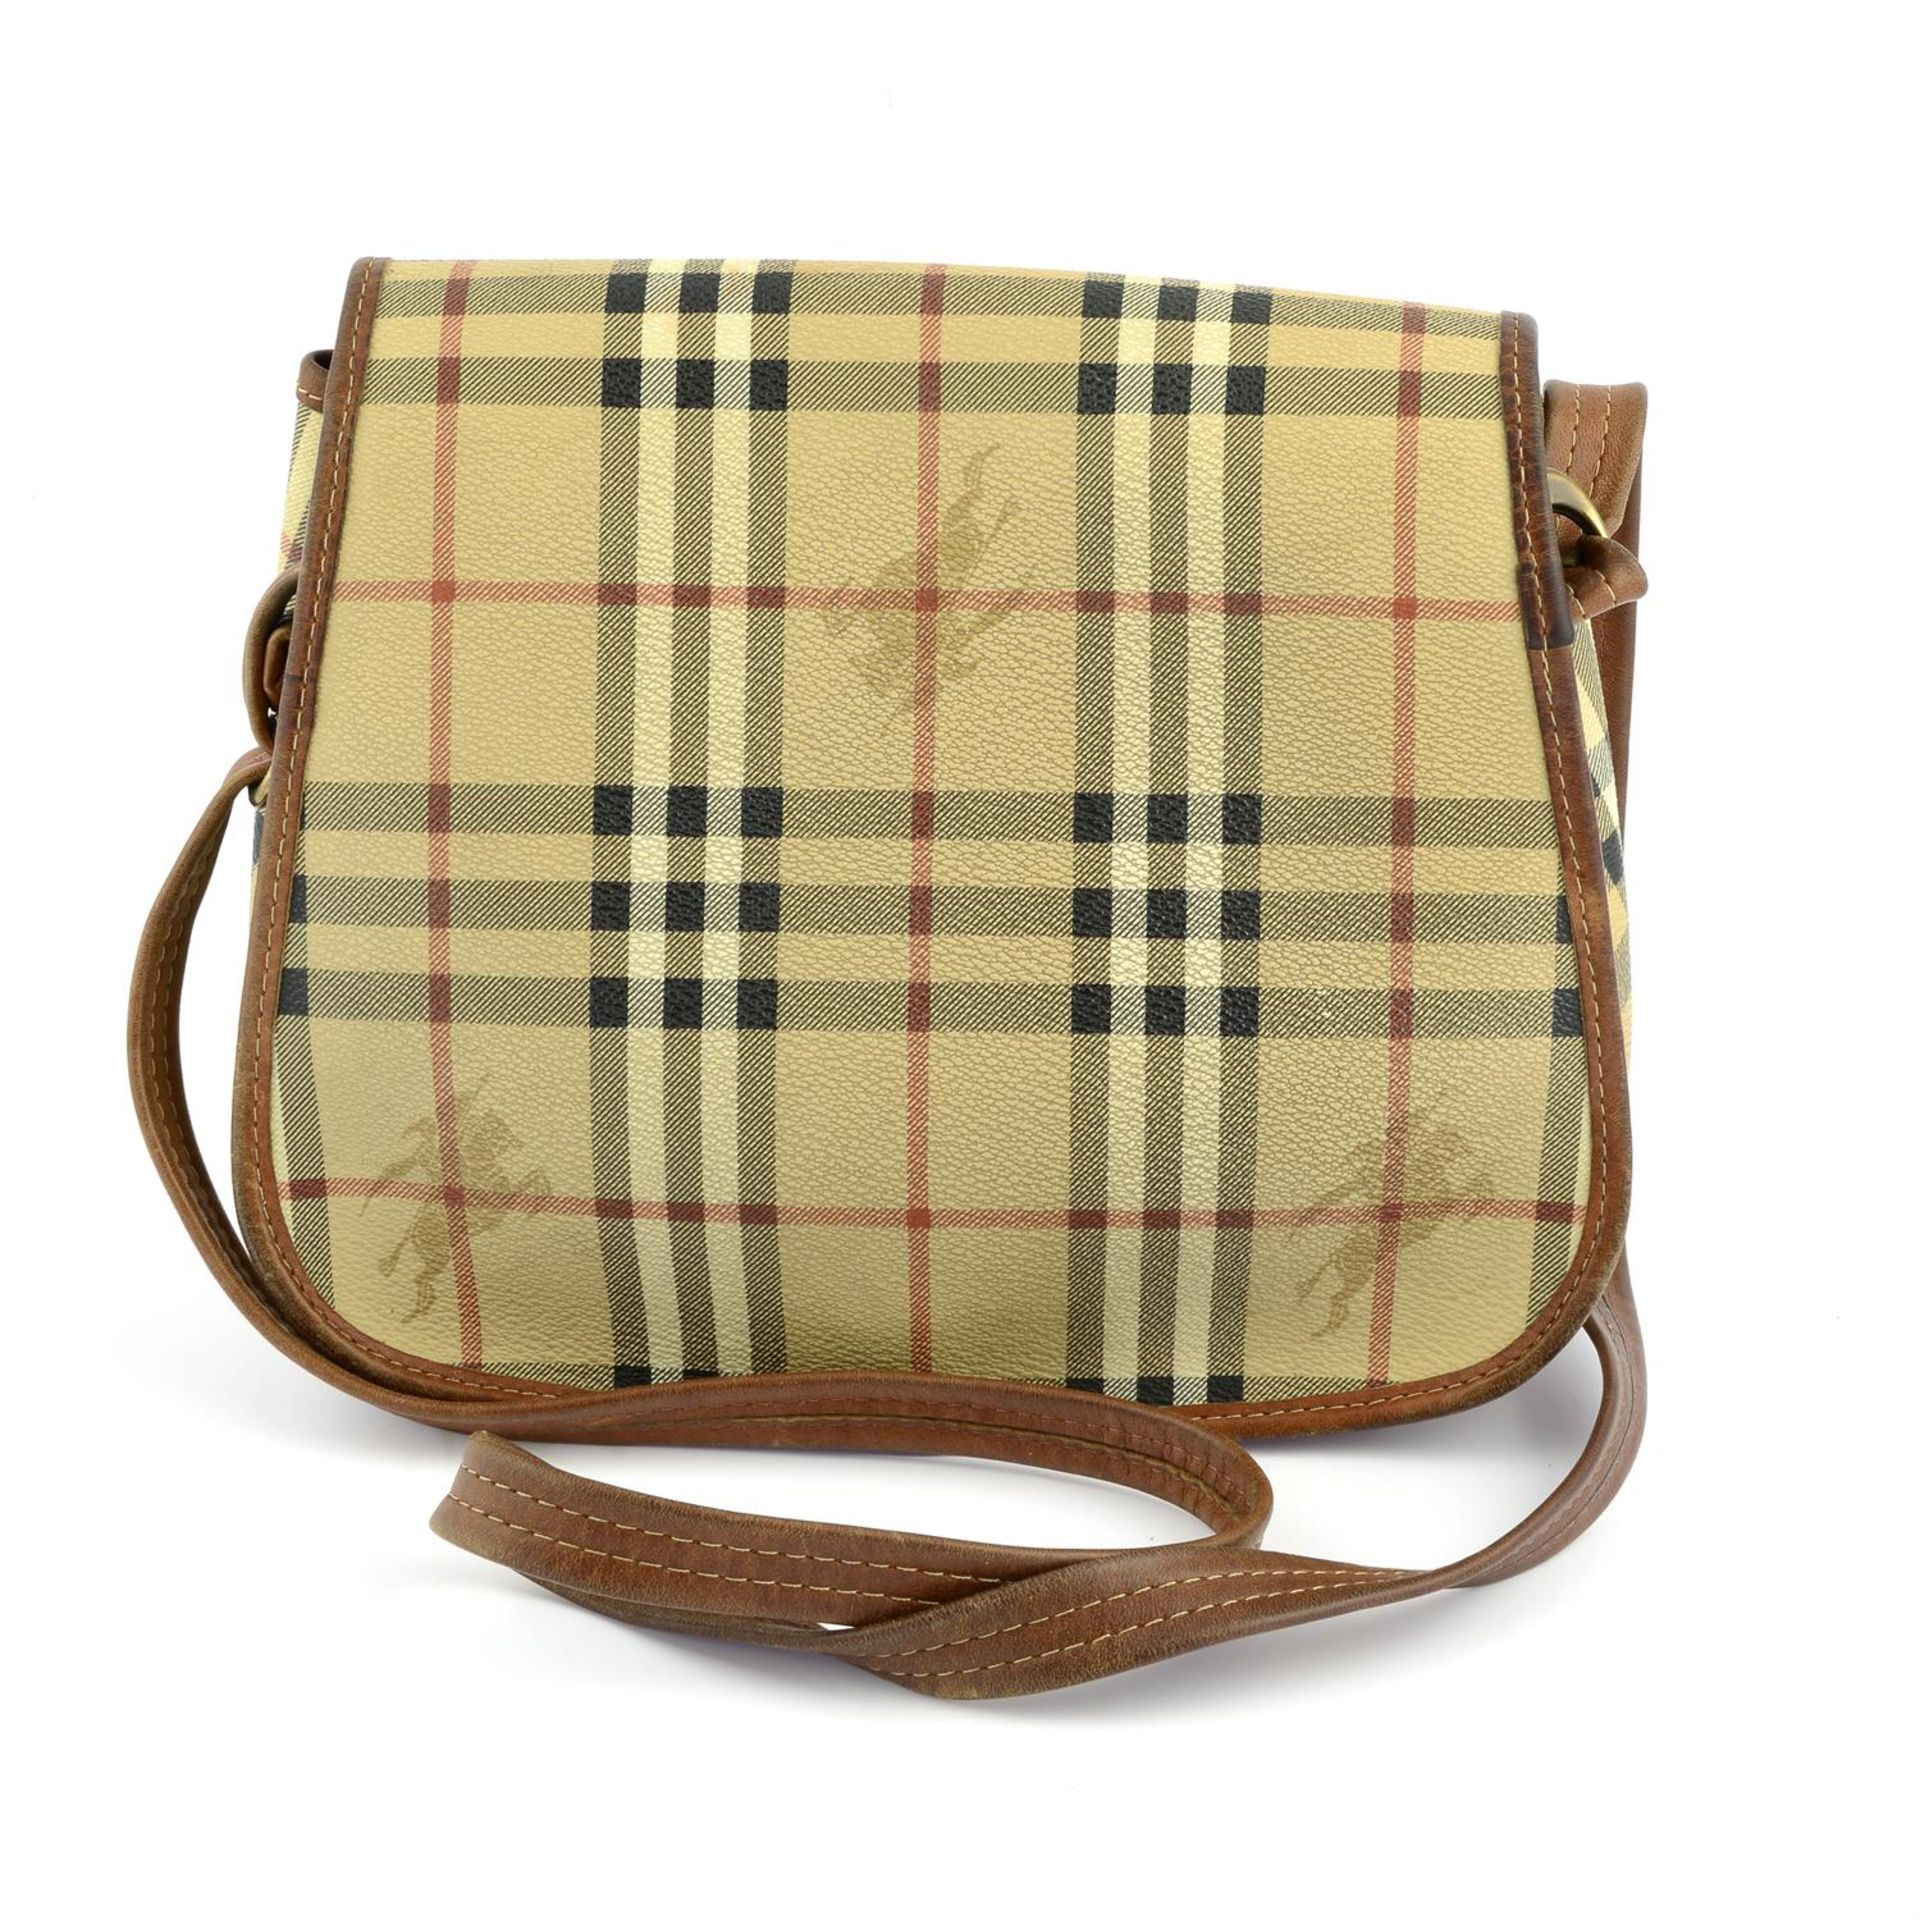 BURBERRY- a brown Haymarket canvas handbag. - Image 2 of 4